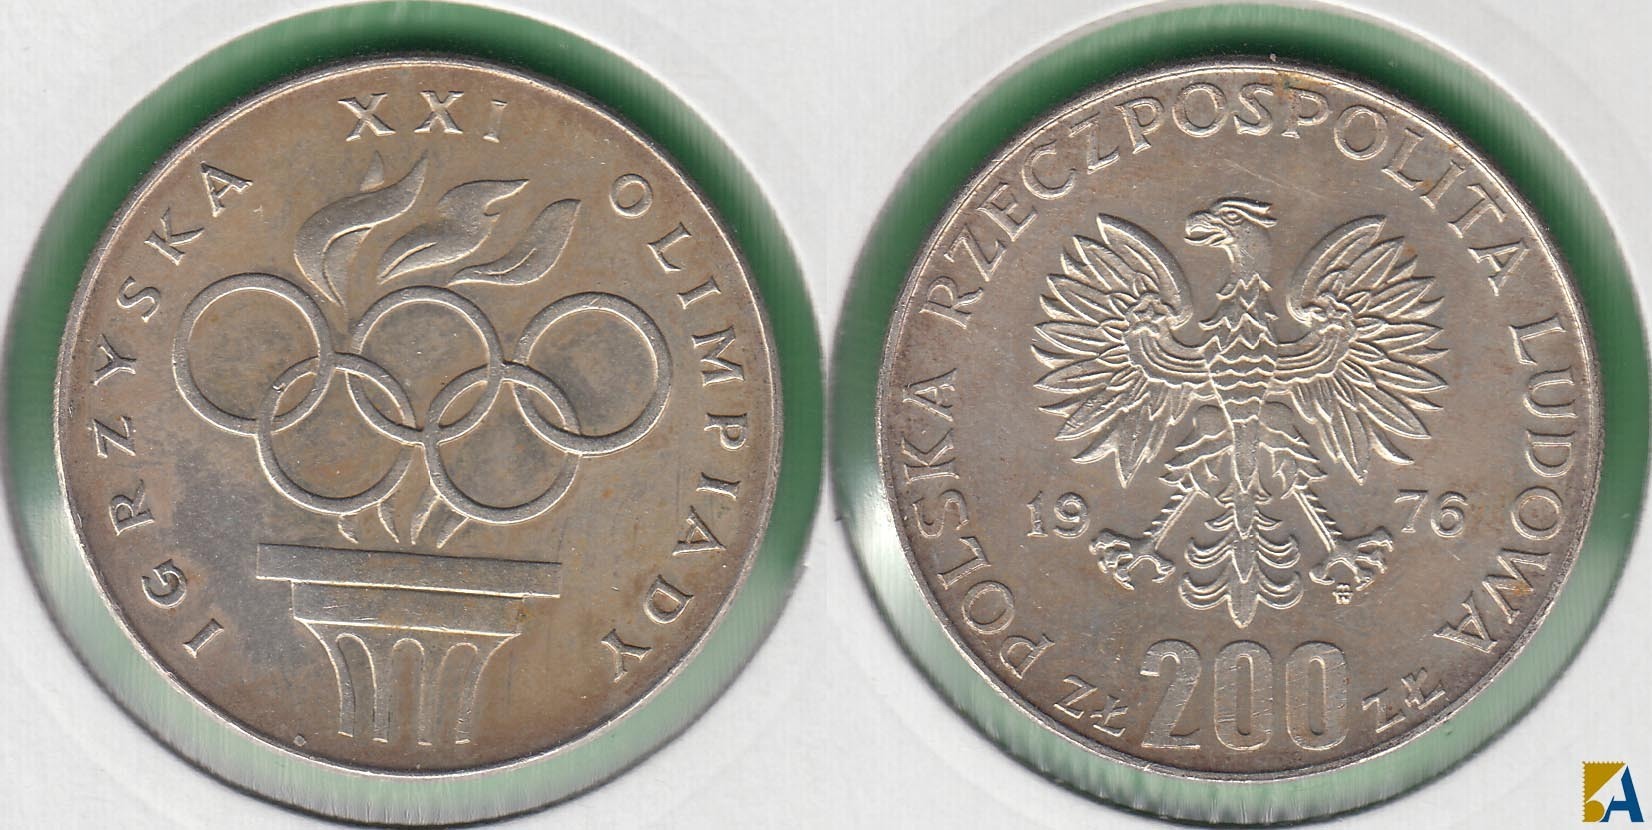 POLONIA - POLSKA. 200 ZLOTYCH DE 1976. PLATA 0.625.